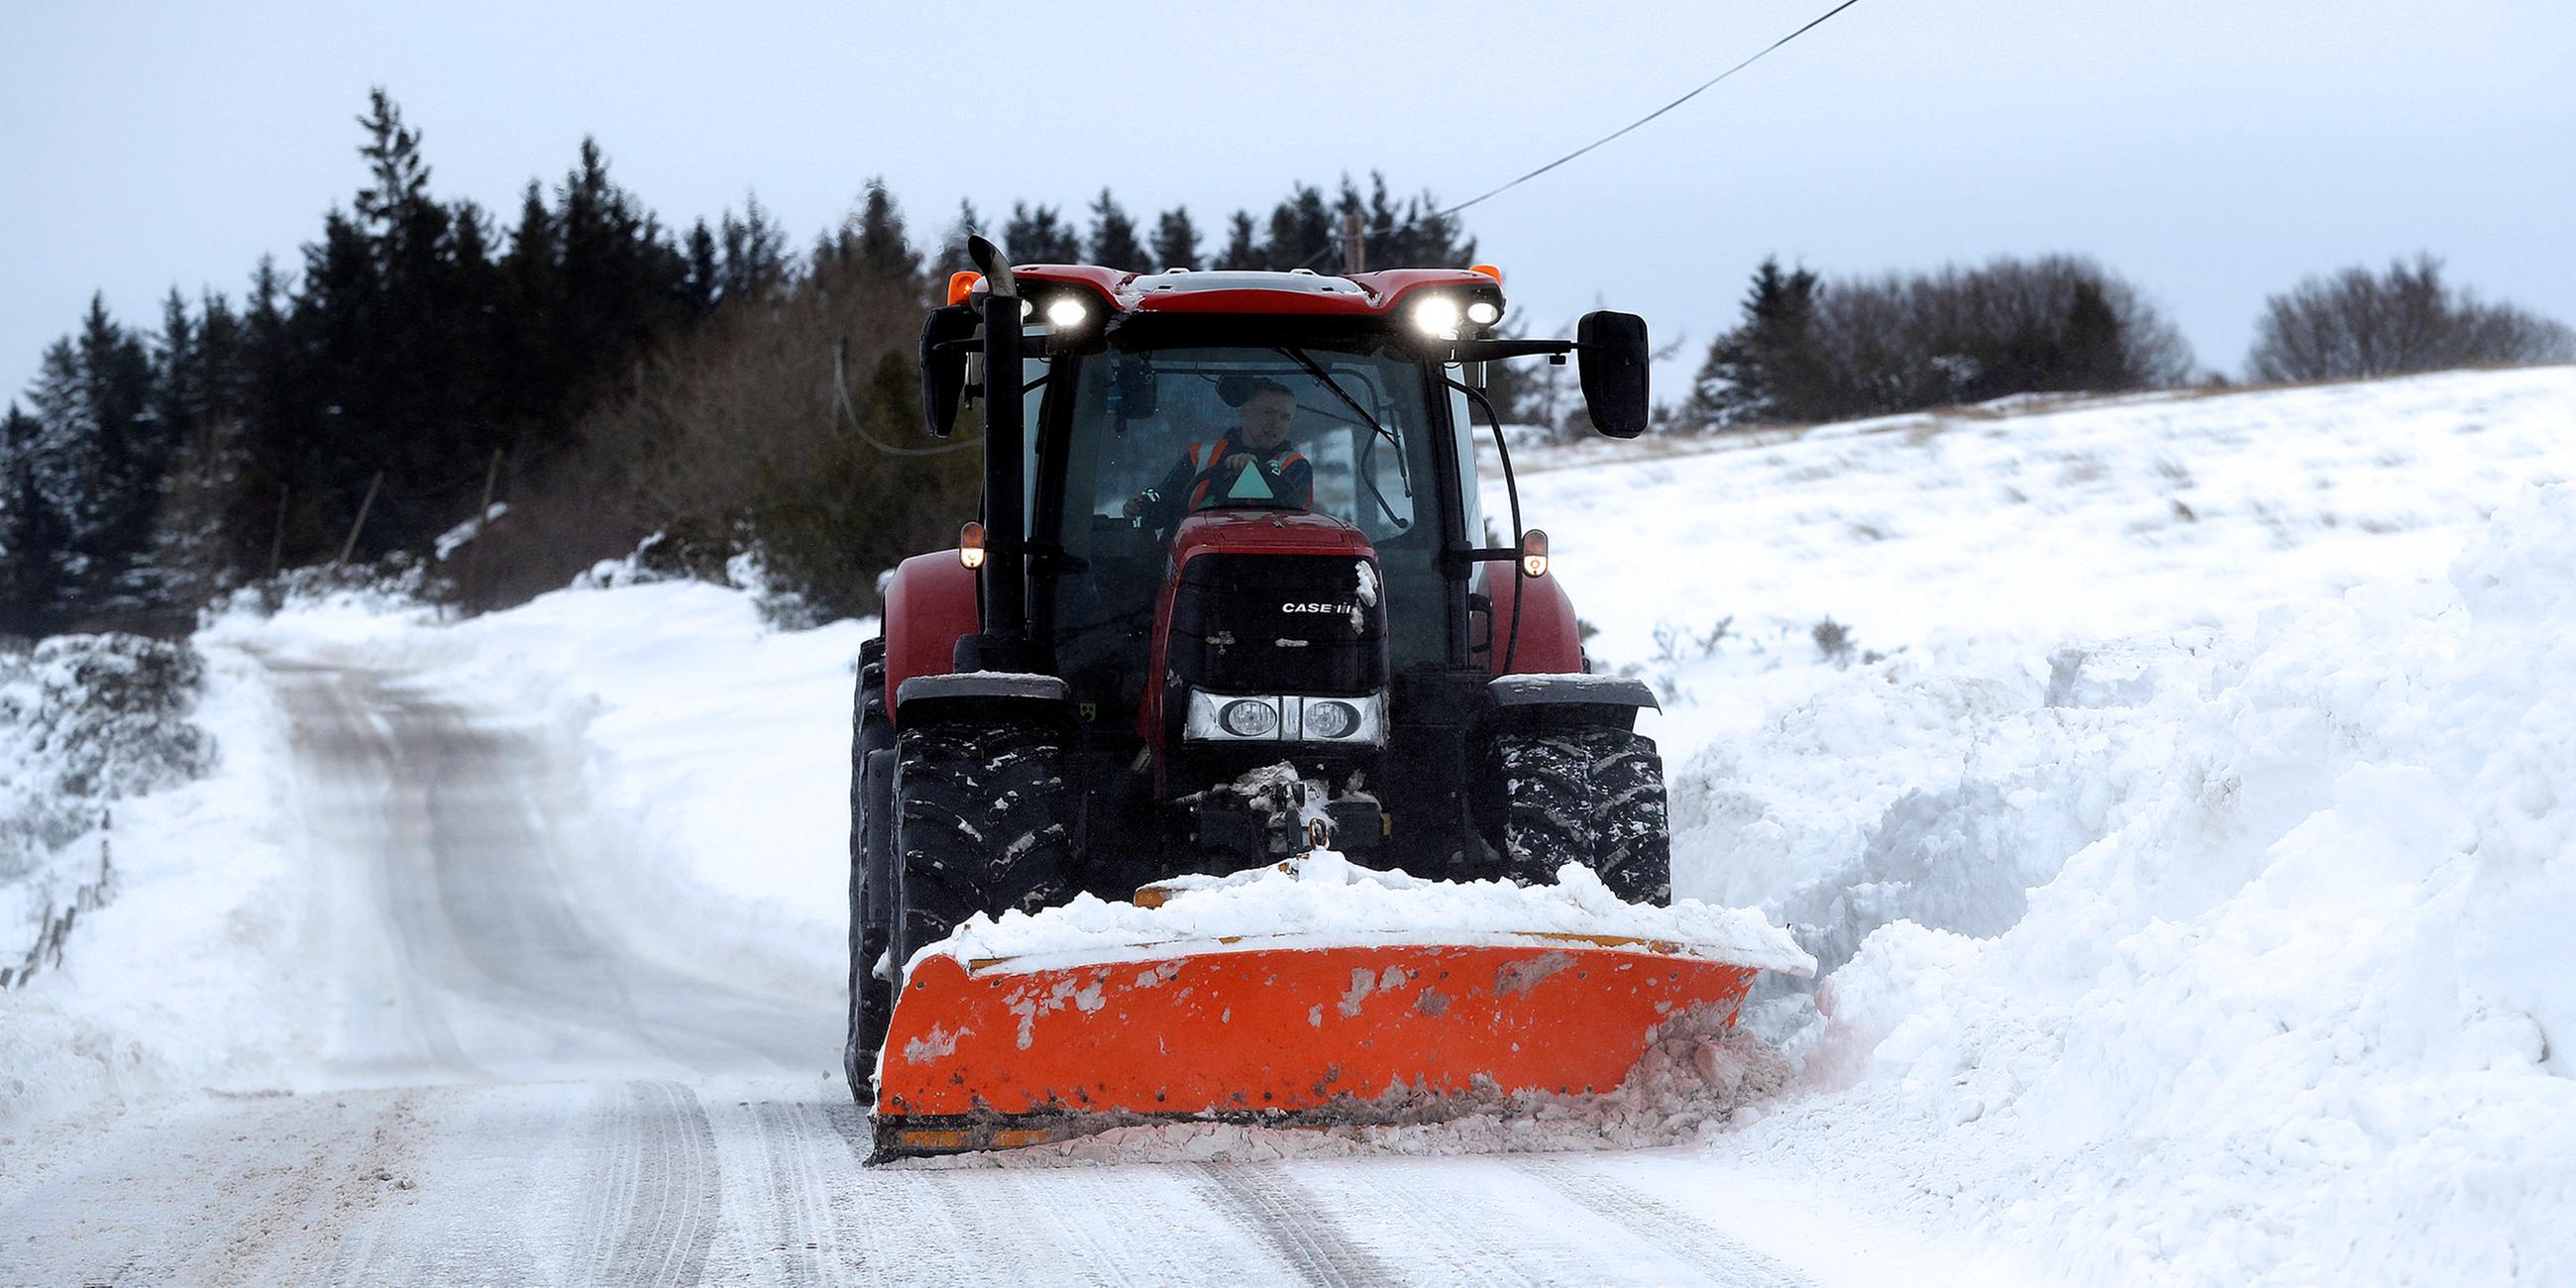 Ein Traktor räumt eine verschneite Straße in Schottland, aufgenommen am 02.03.2018